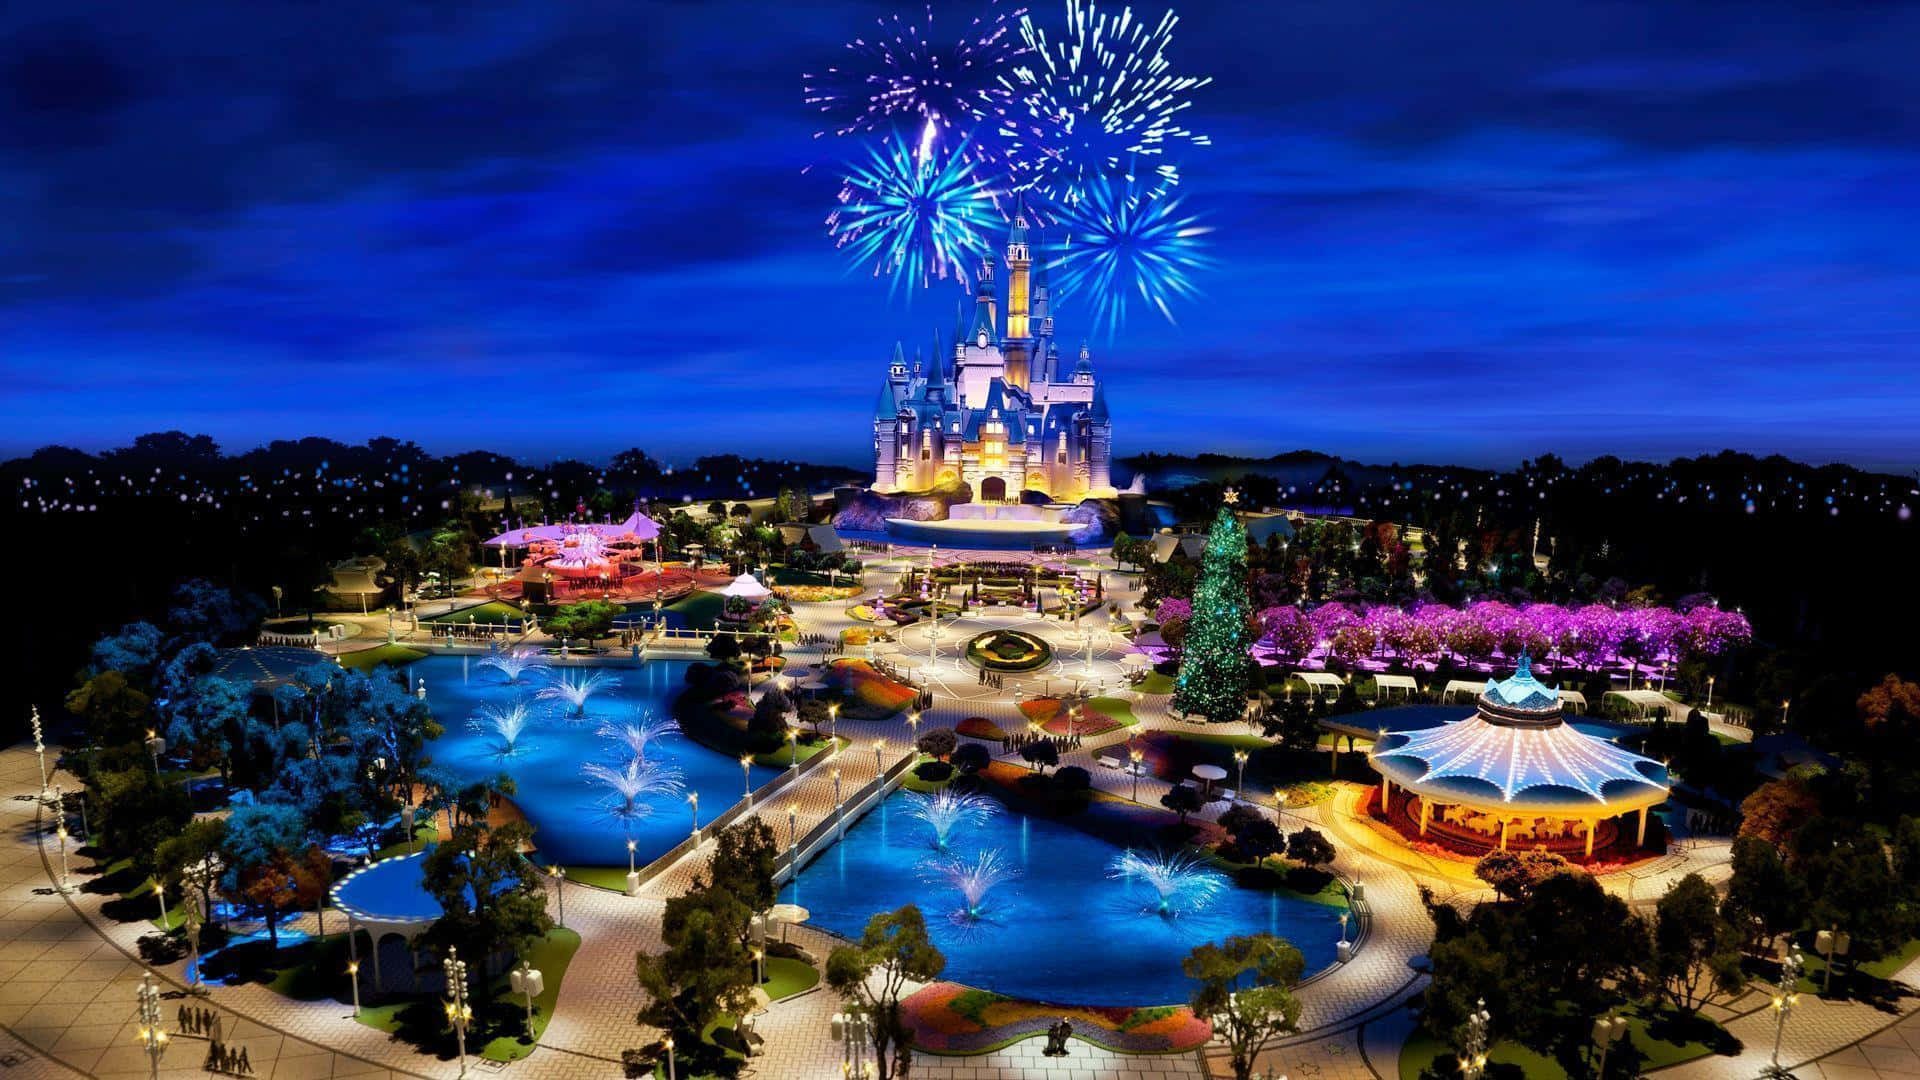 Uncastello Disney Con Fuochi D'artificio E Un Parco Acquatico